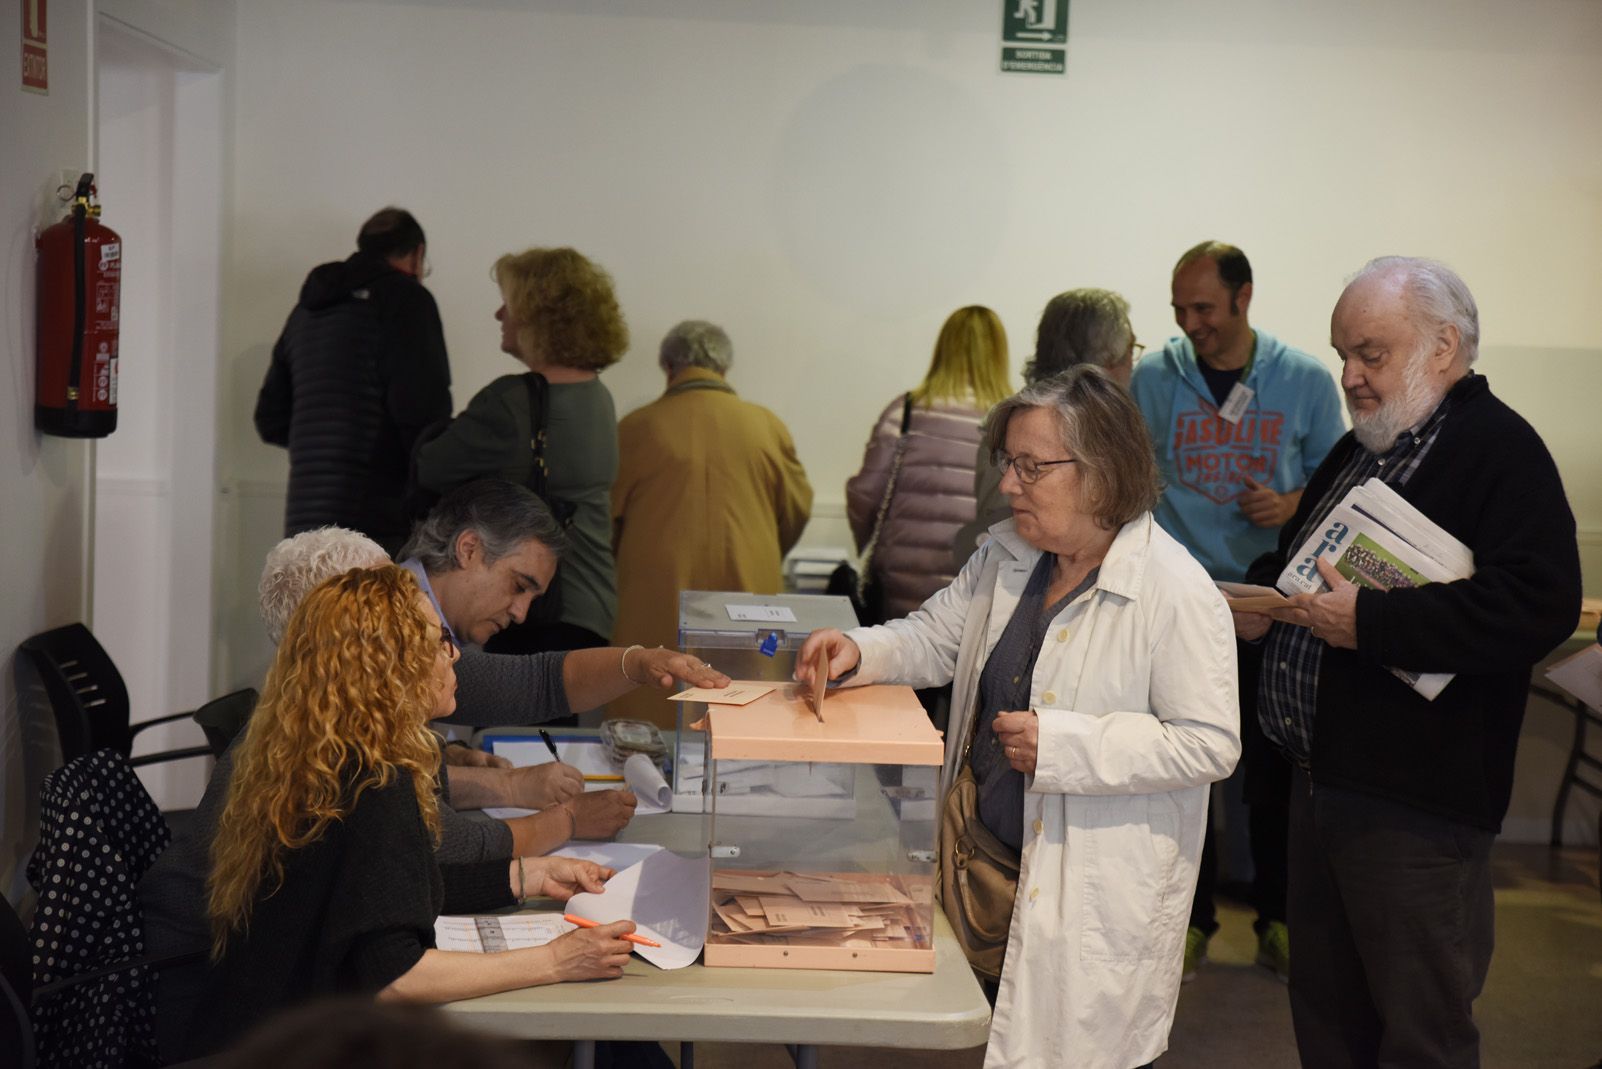 Votants al Casal de Cultura de Sant Cugat per les eleccions al congrés Espanyol. Foto: Bernat Millet.